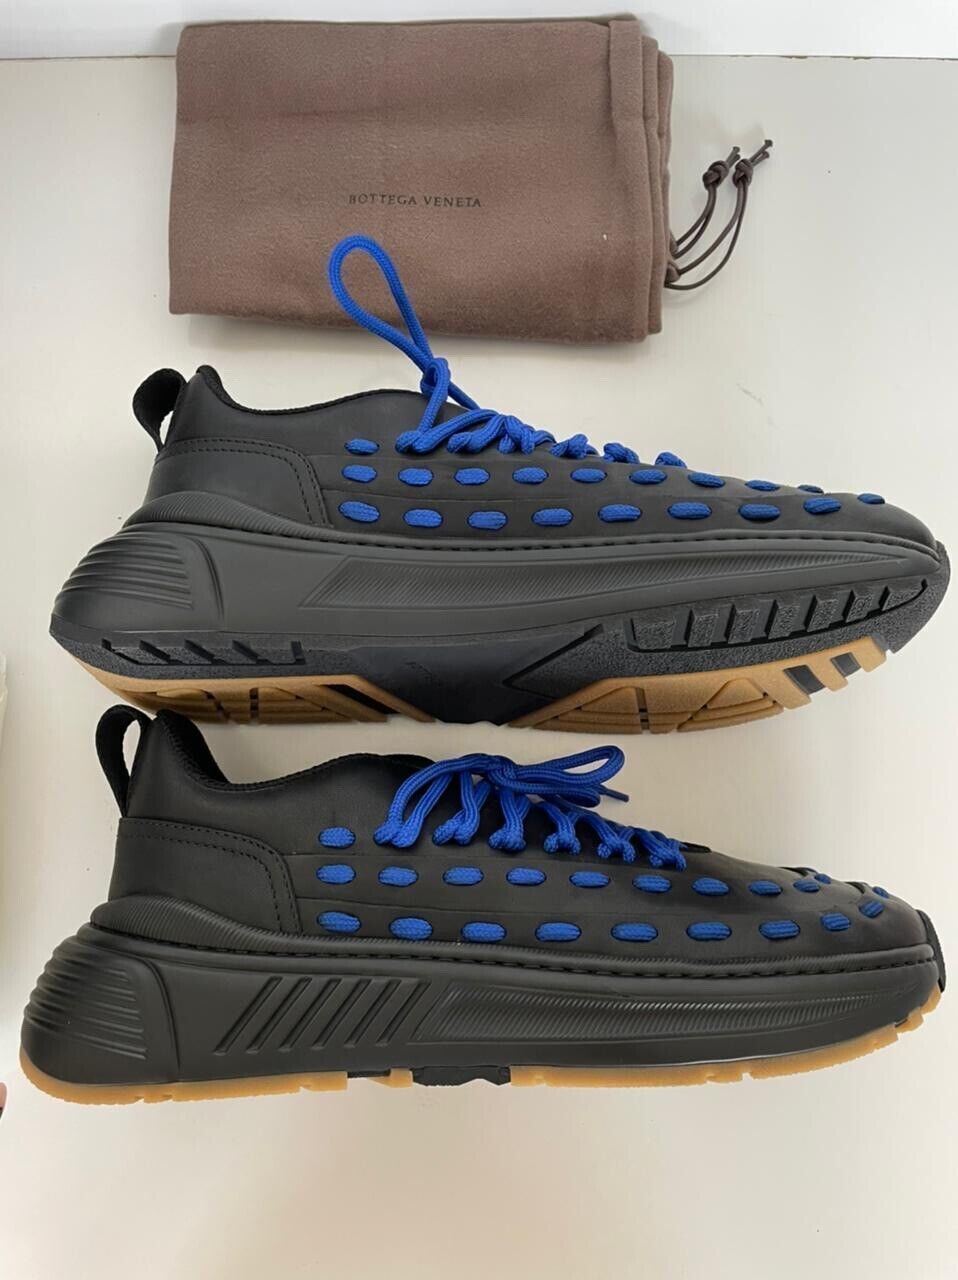 NIB 950 $ Bottega Veneta Herren-Sneaker aus Leder in Schwarz/Blau 7,5 US 578305 1014 